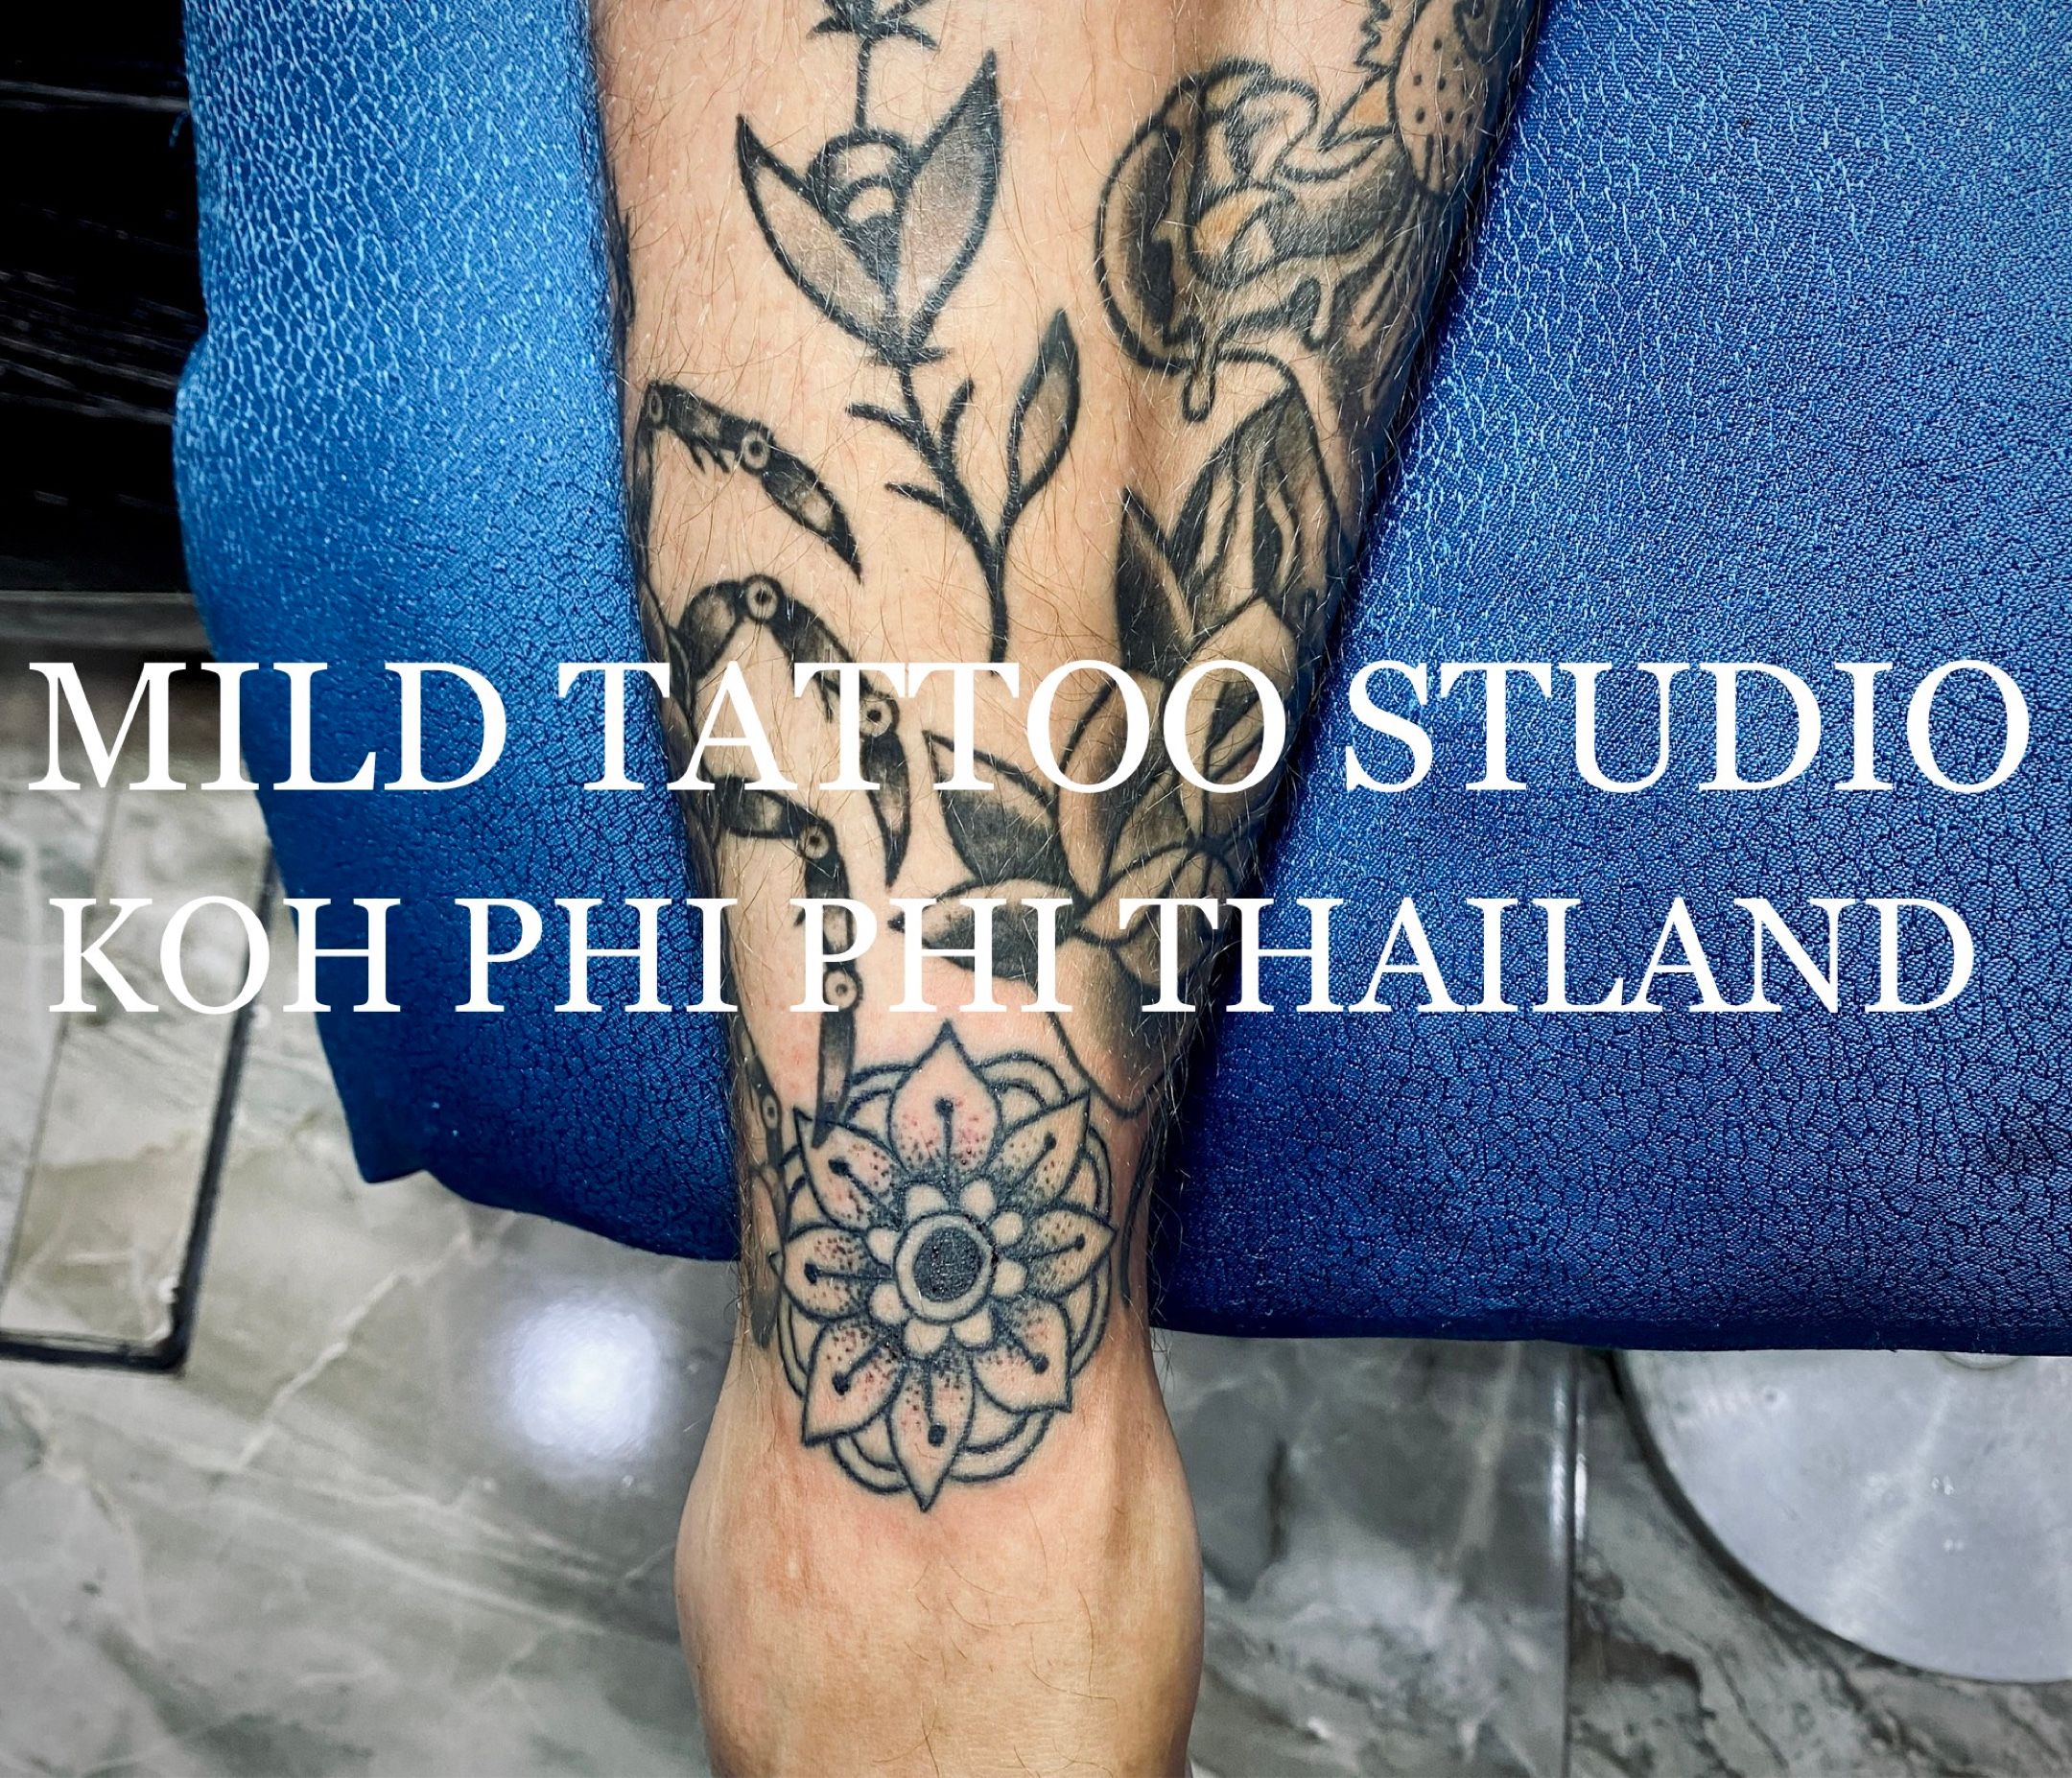 MILD tattoo phi phi island thailand - #swordtattoo #tattooart #tattooartist  #bambootattoothailand #traditional #tattooshop #at #mildtattoostudio  #mildtattoophiphi #tattoophiphi #phiphiisland #thailand #tattoodo  #tattooink #tattoo #phiphi #kohphiphi ...